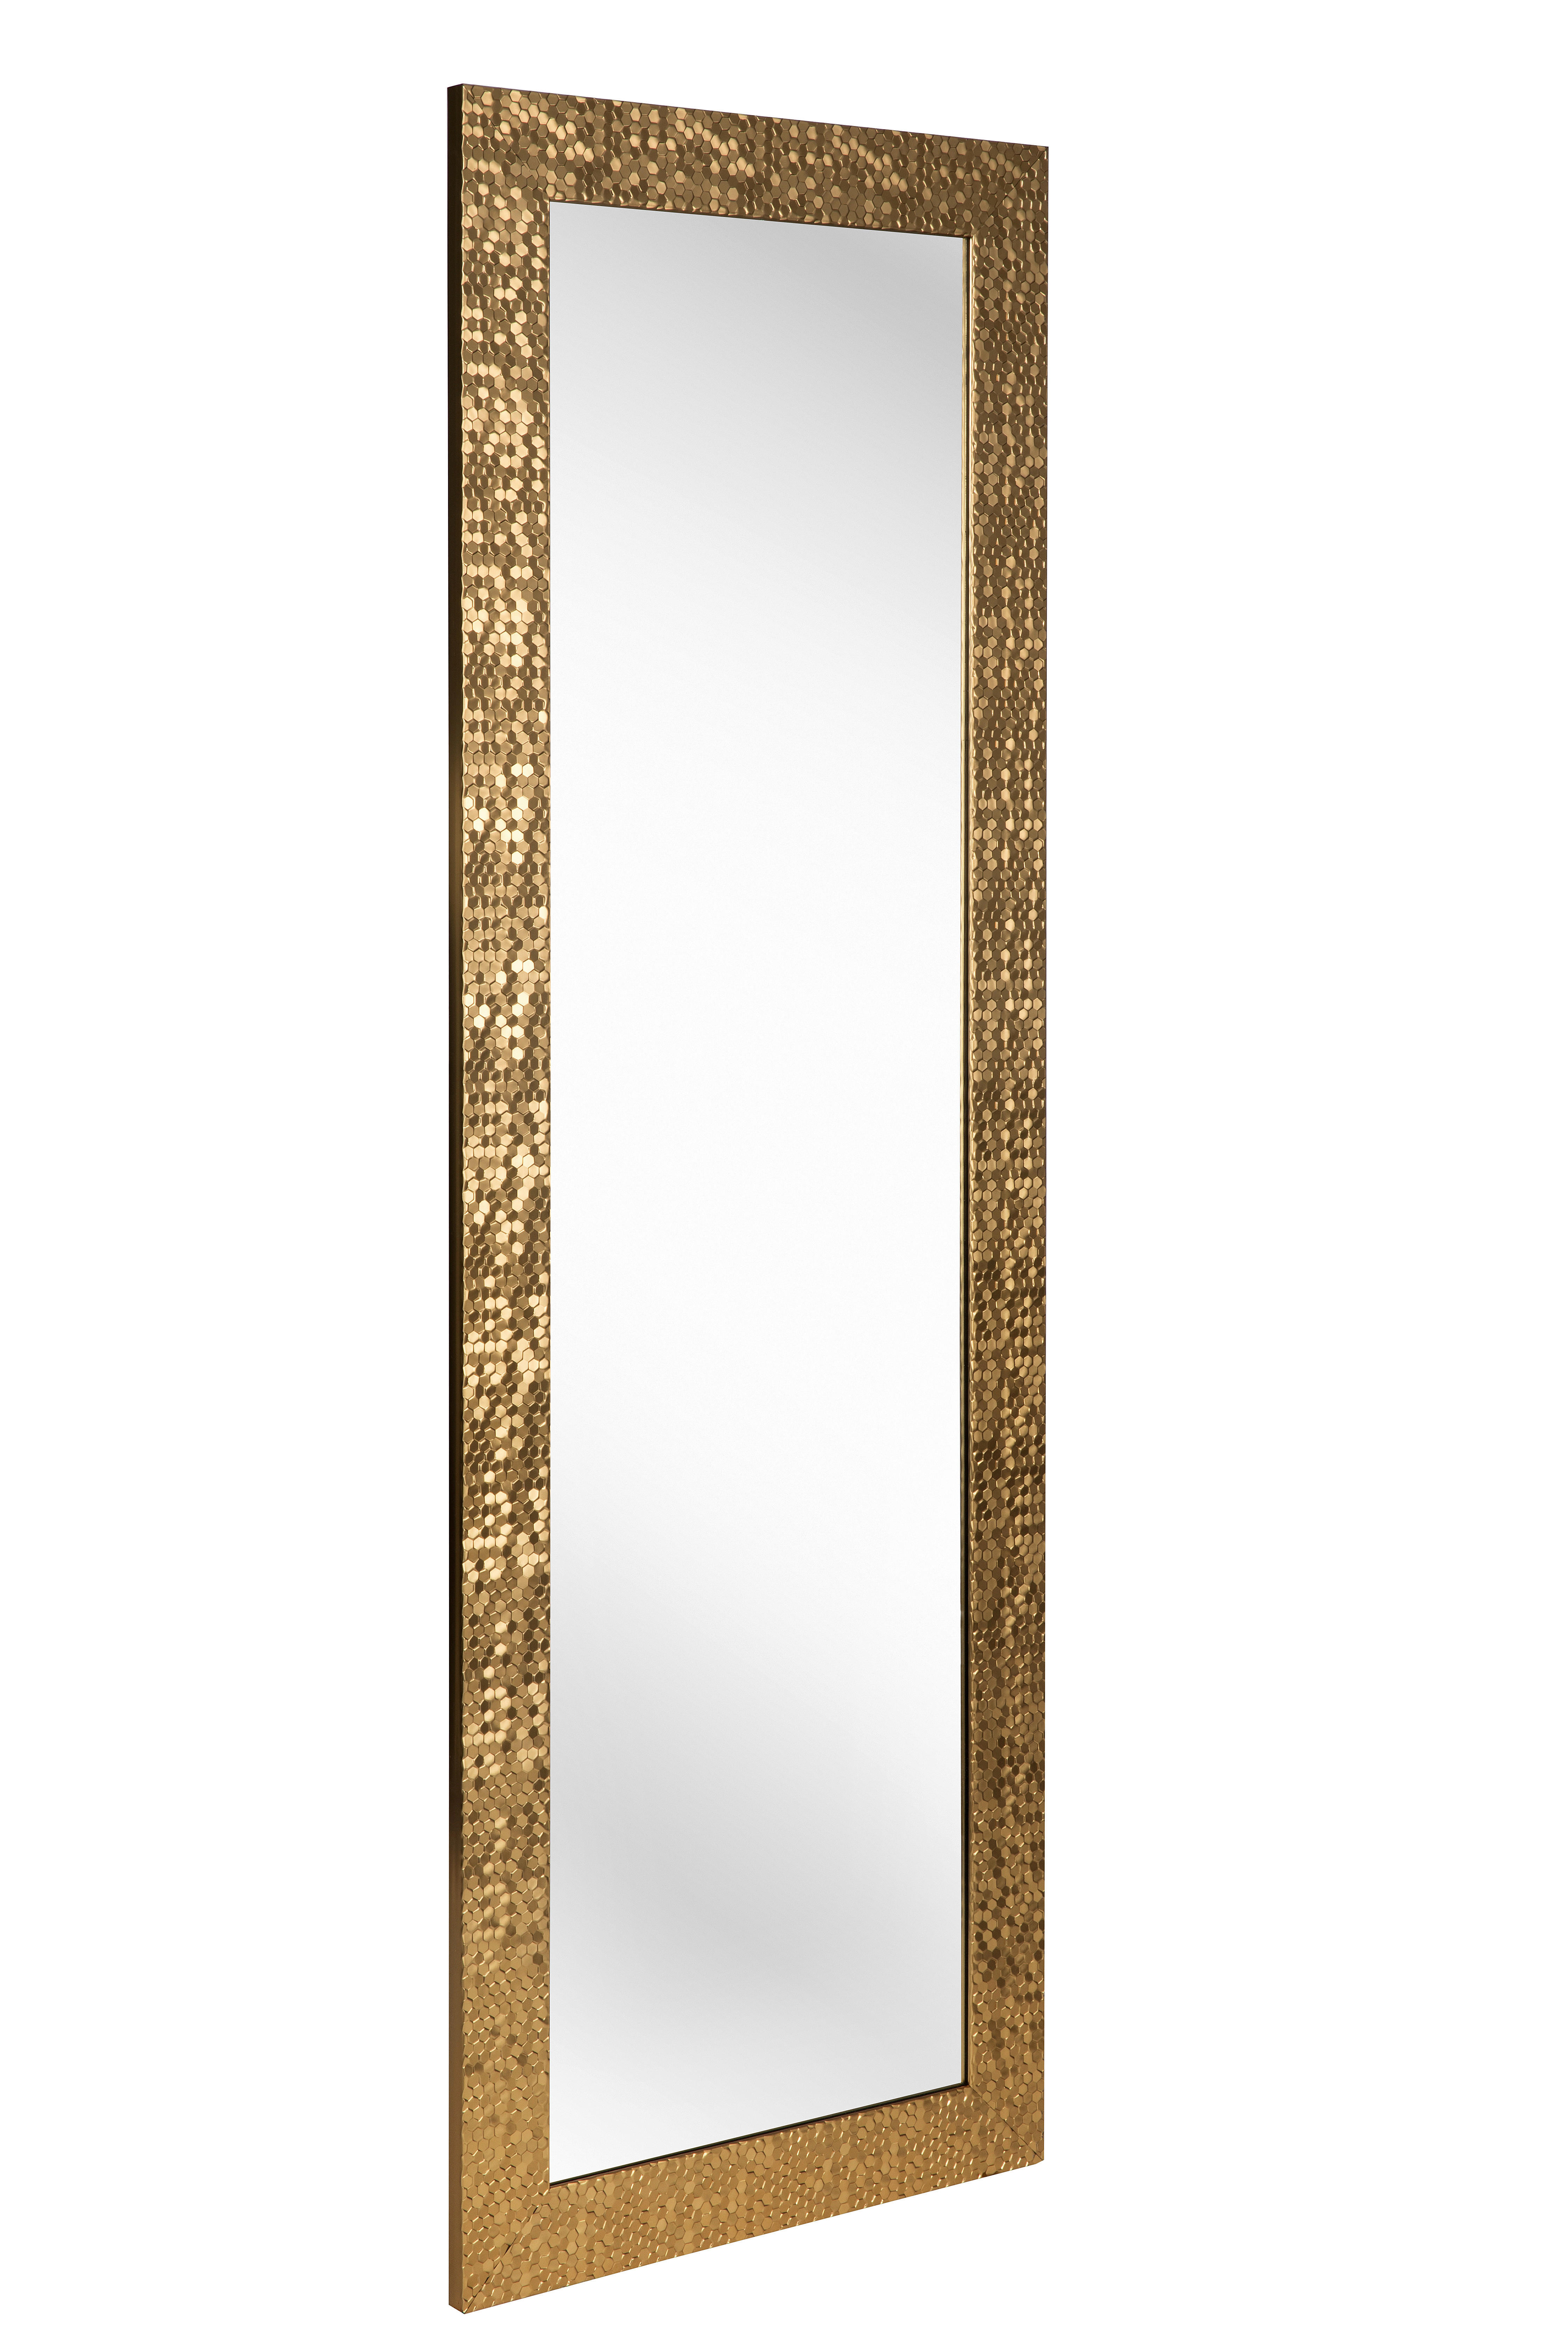 WANDSPIEGEL 50/150/2 cm  - Goldfarben, Lifestyle, Glas/Kunststoff (50/150/2cm) - Carryhome